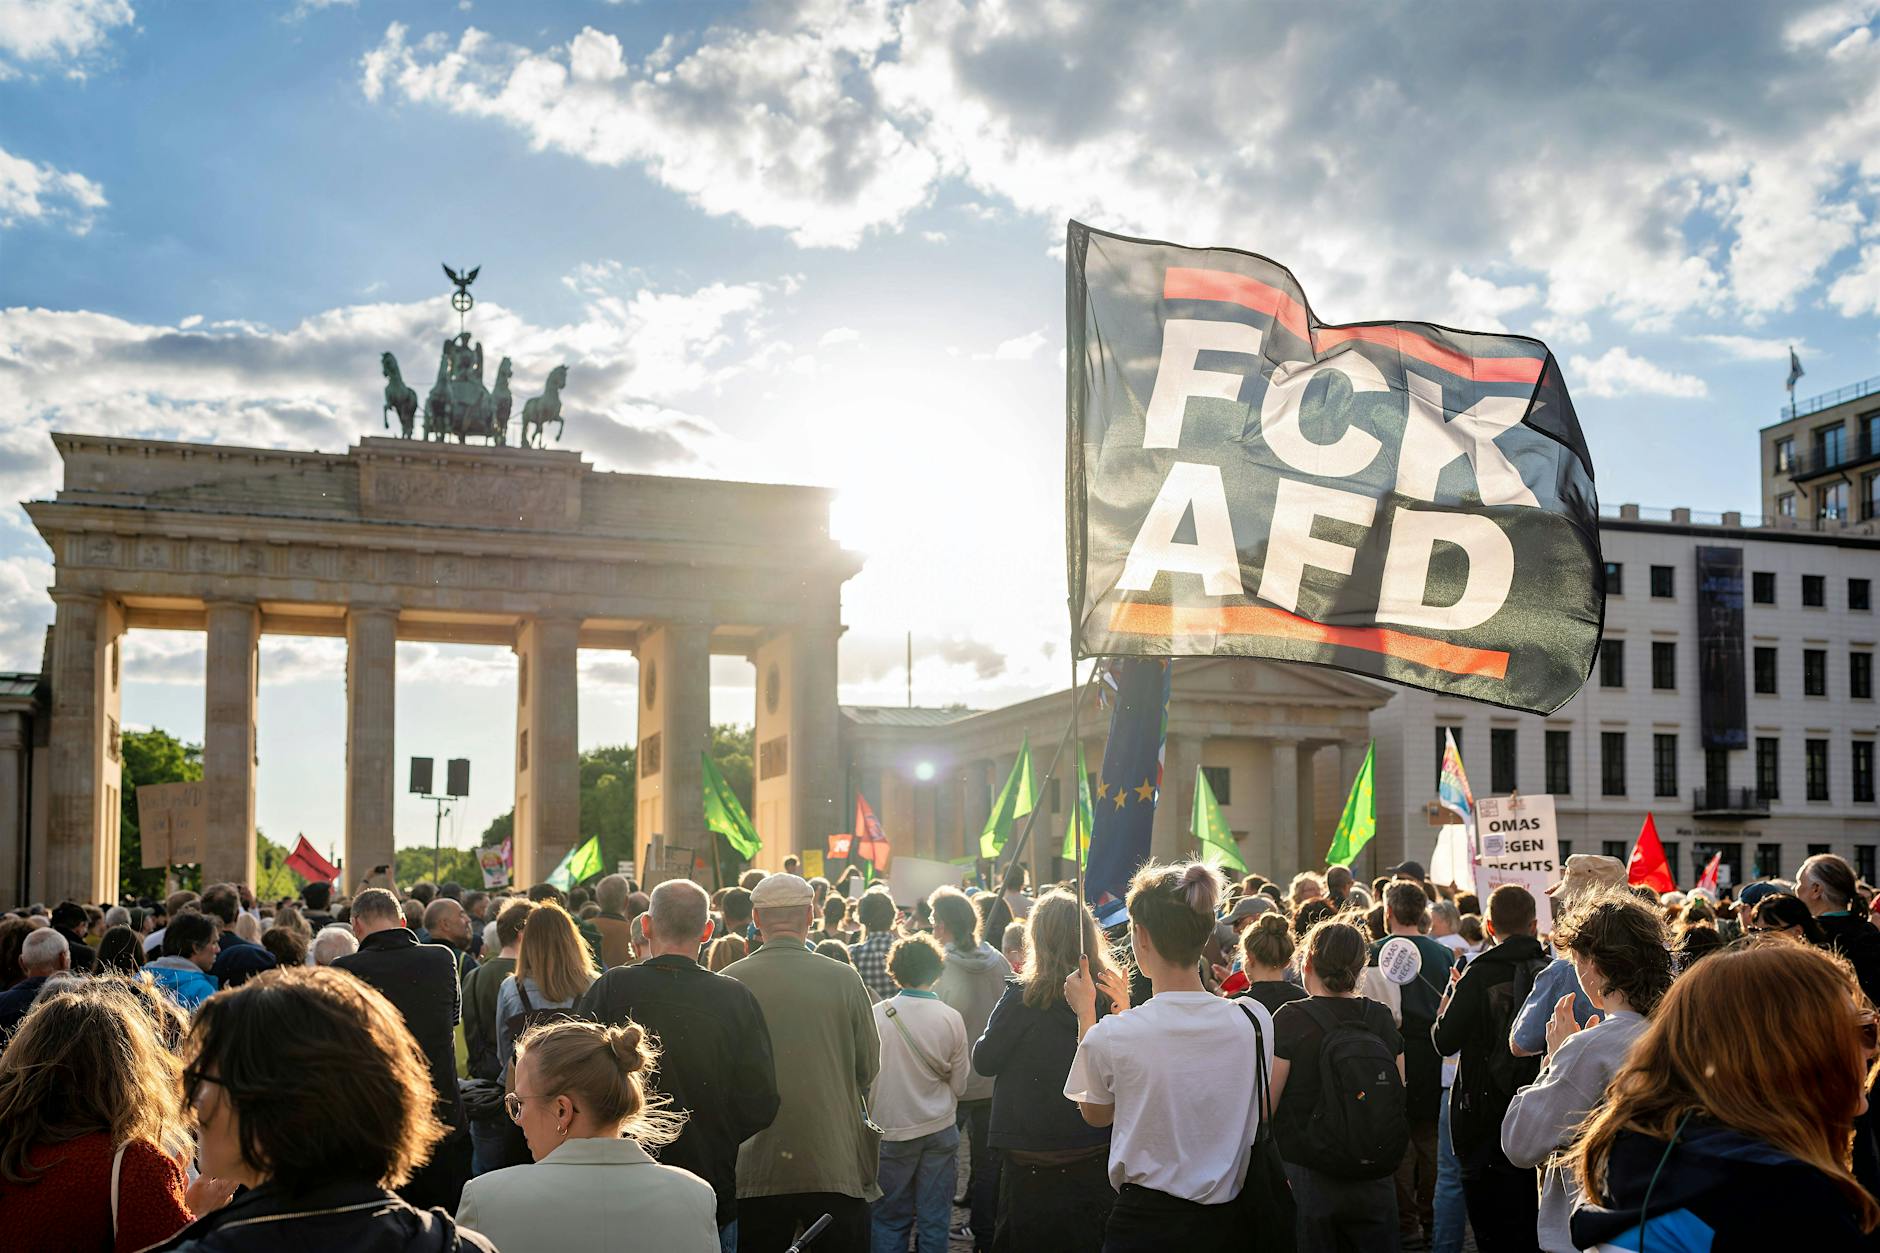 Angriff auf Matthias Ecke: Tausende demonstrieren in Berlin, Brandenburg und Dresden gegen Gewalt